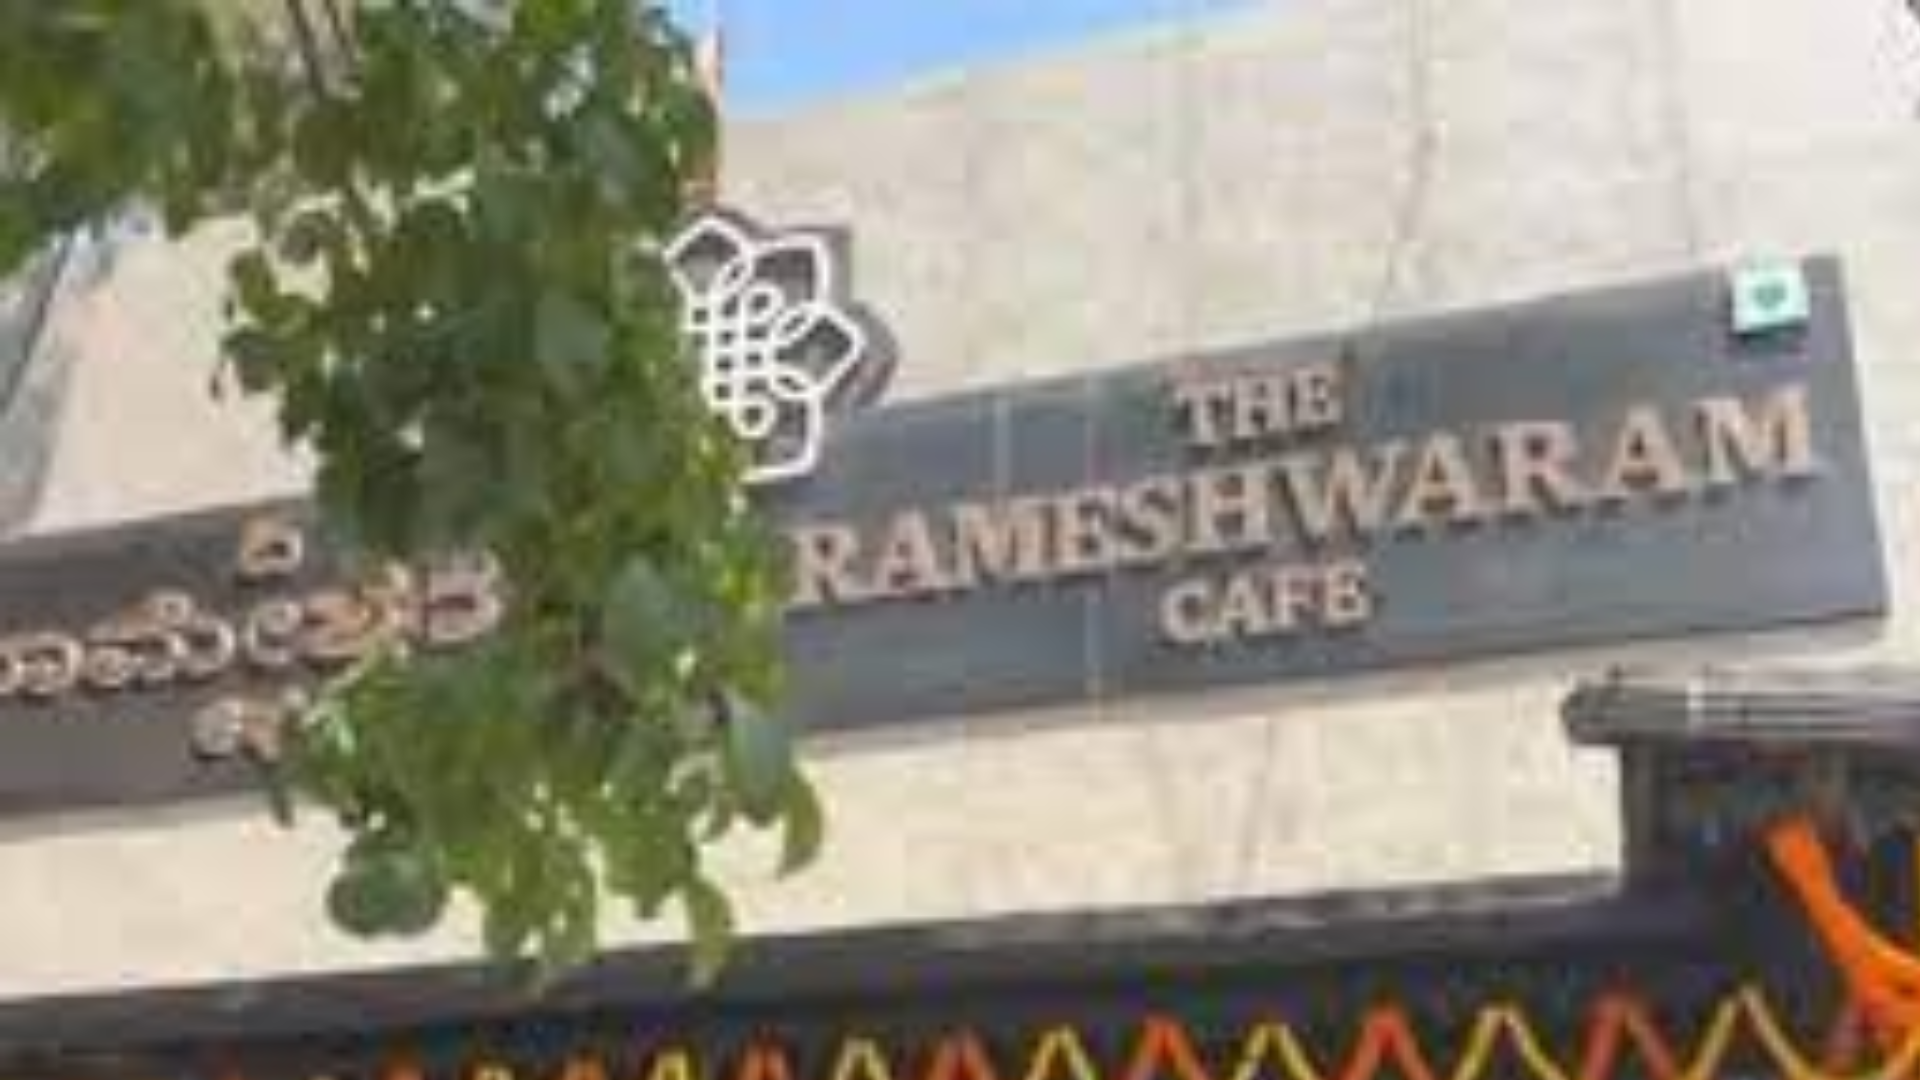 Rameshwaram Cafe Bengaluru